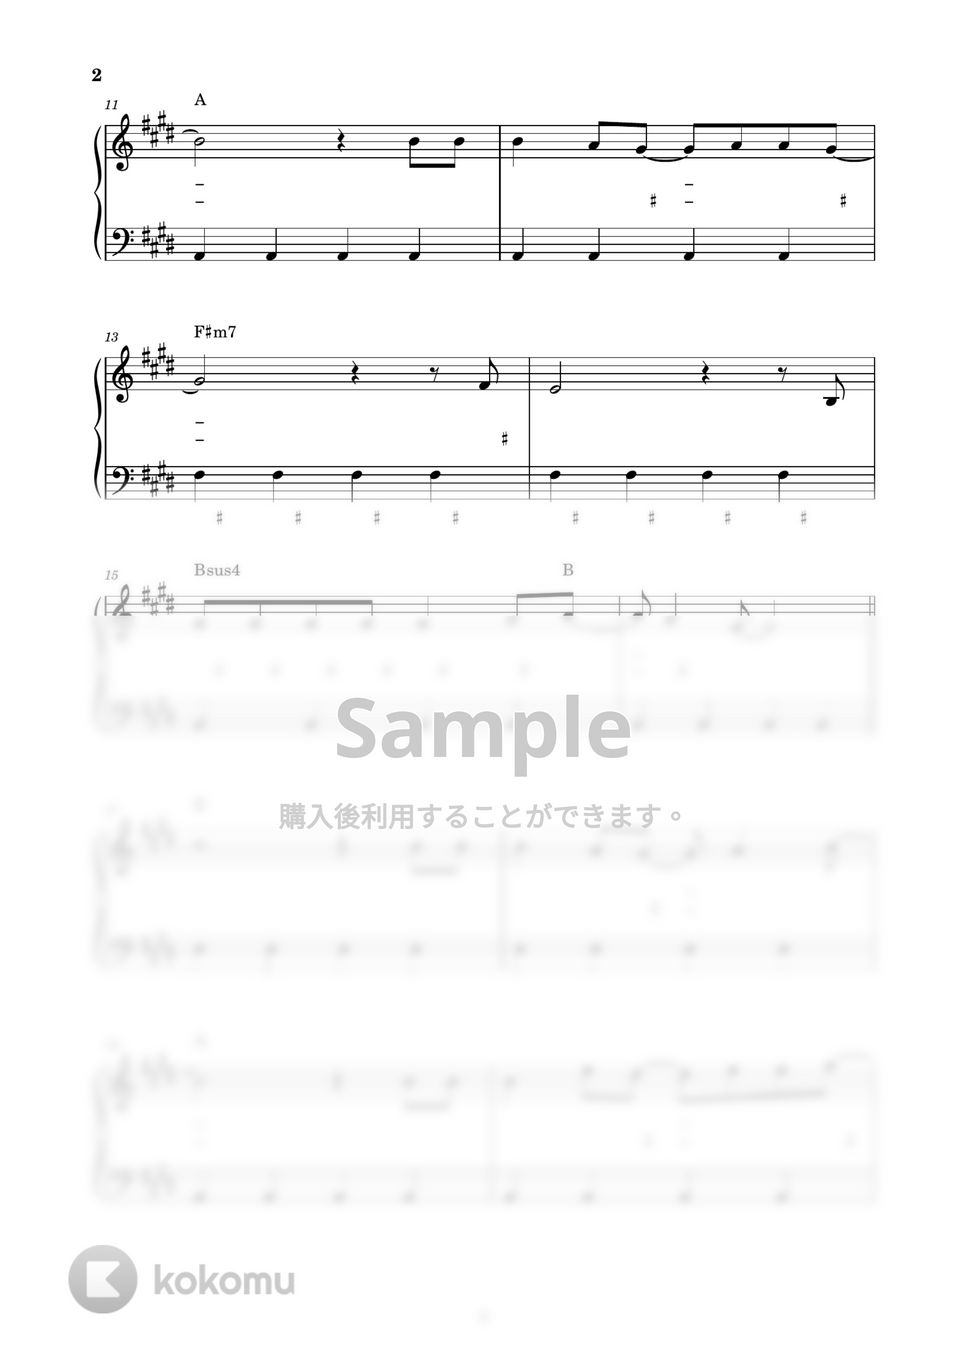 DISH// - しわくちゃな雲を抱いて (ピアノ楽譜 / かんたん両手 / 歌詞付き / ドレミ付き / 初心者向き) by piano.tokyo